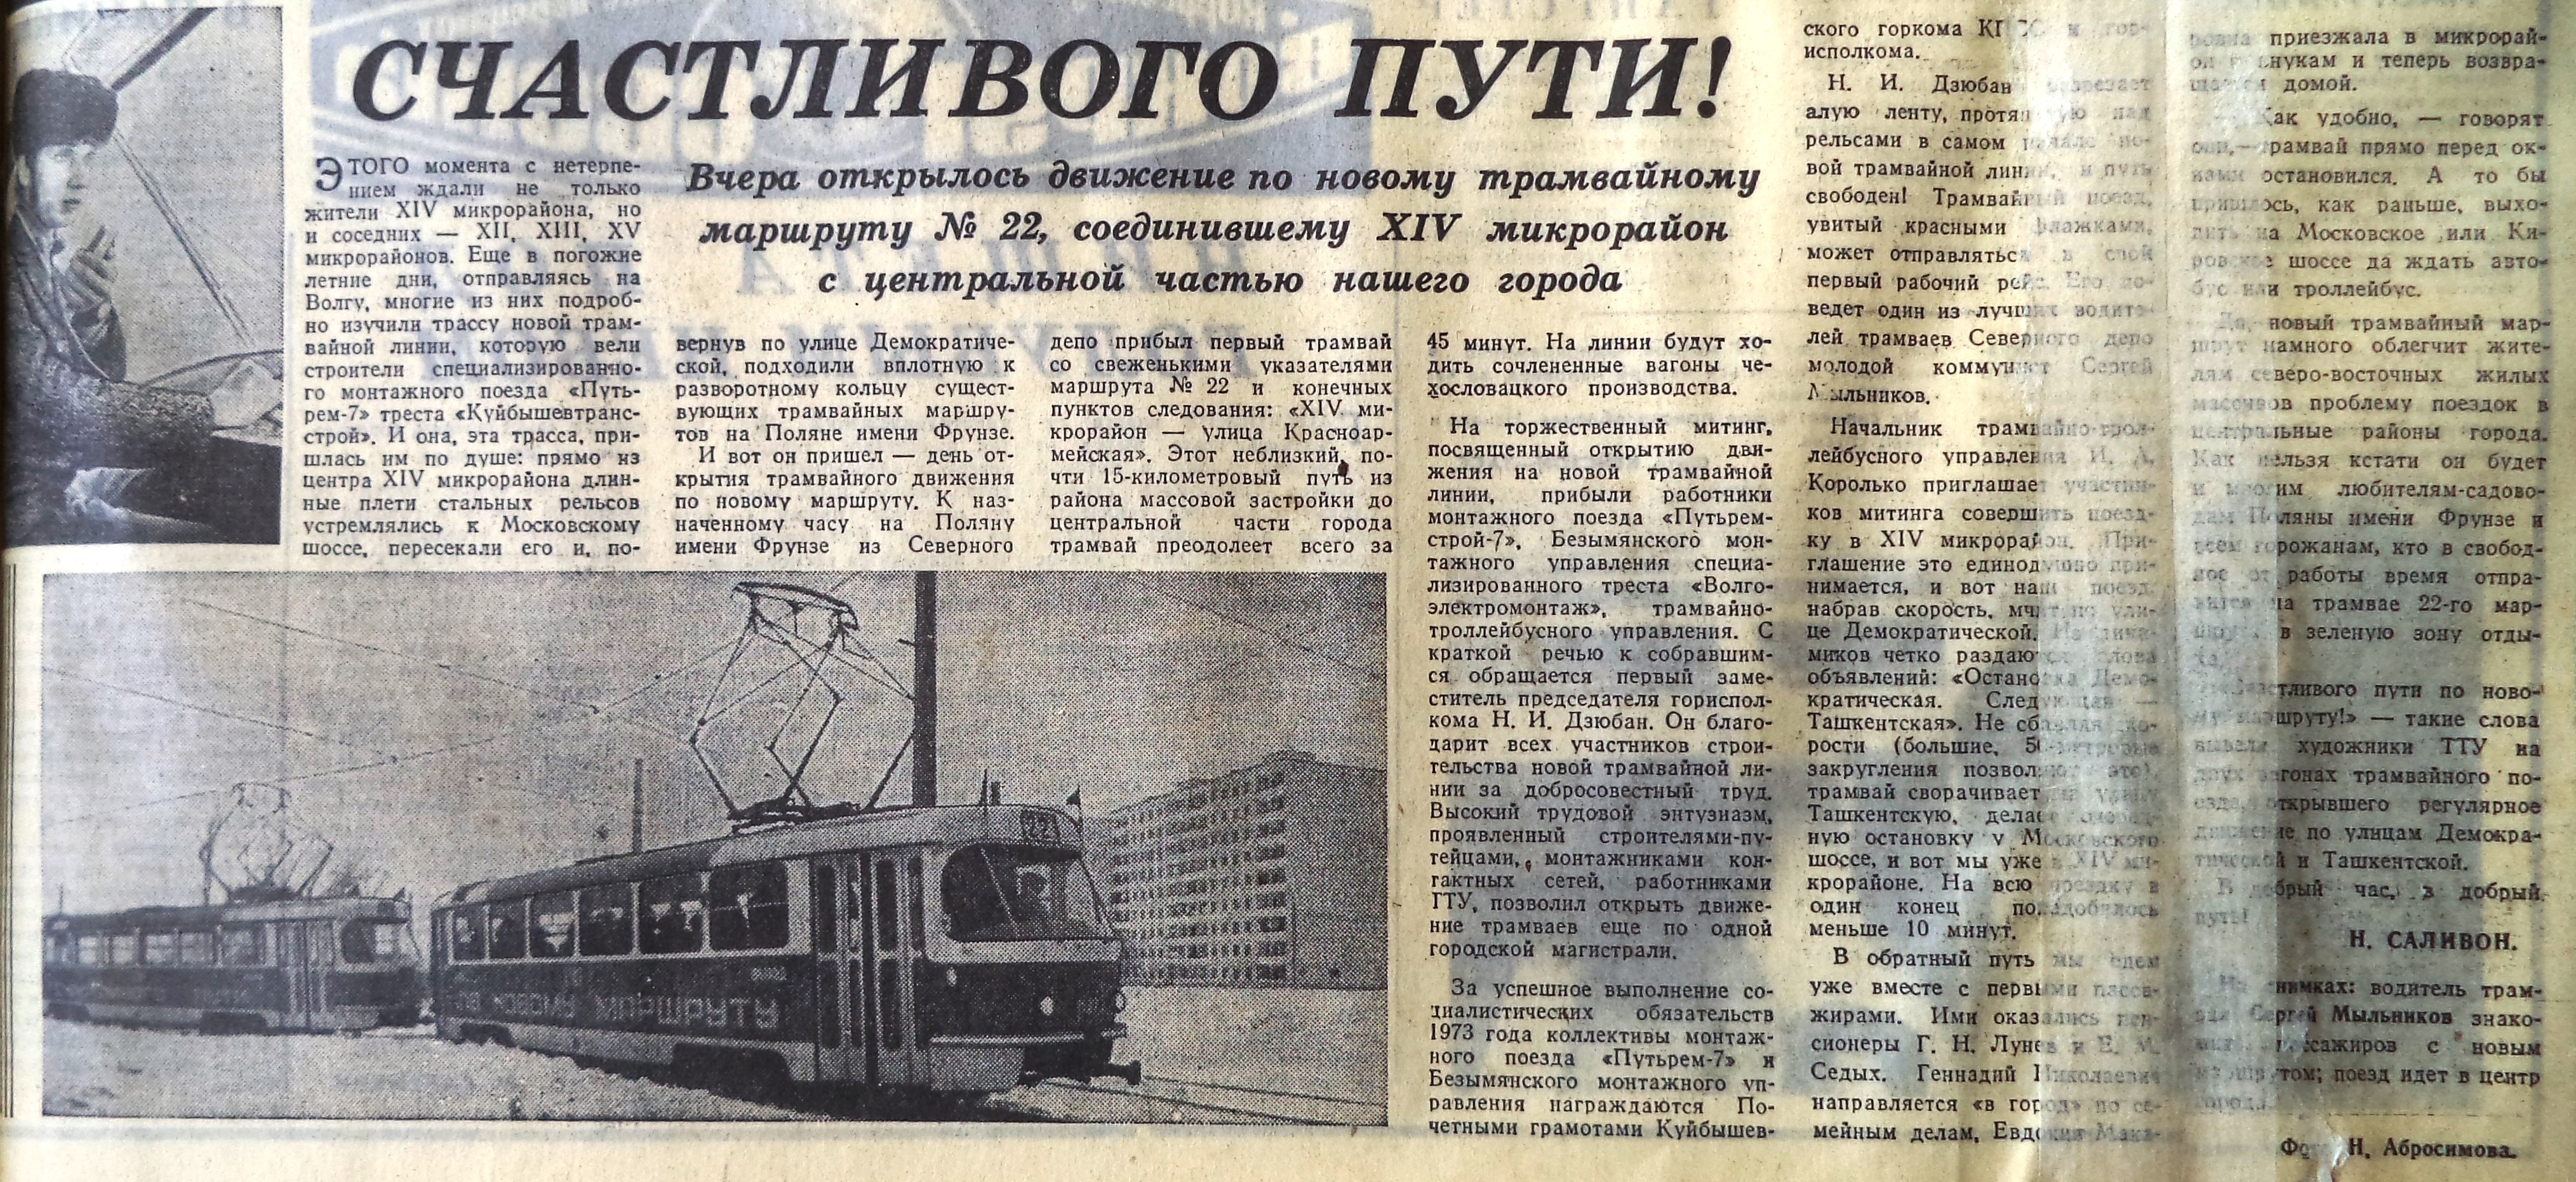 В первом трамвае было в 3 раза. Газеты в трамвае. Трамвай 1973 года. Пуск первого трамвая. Царицынский трамвай в газетах.